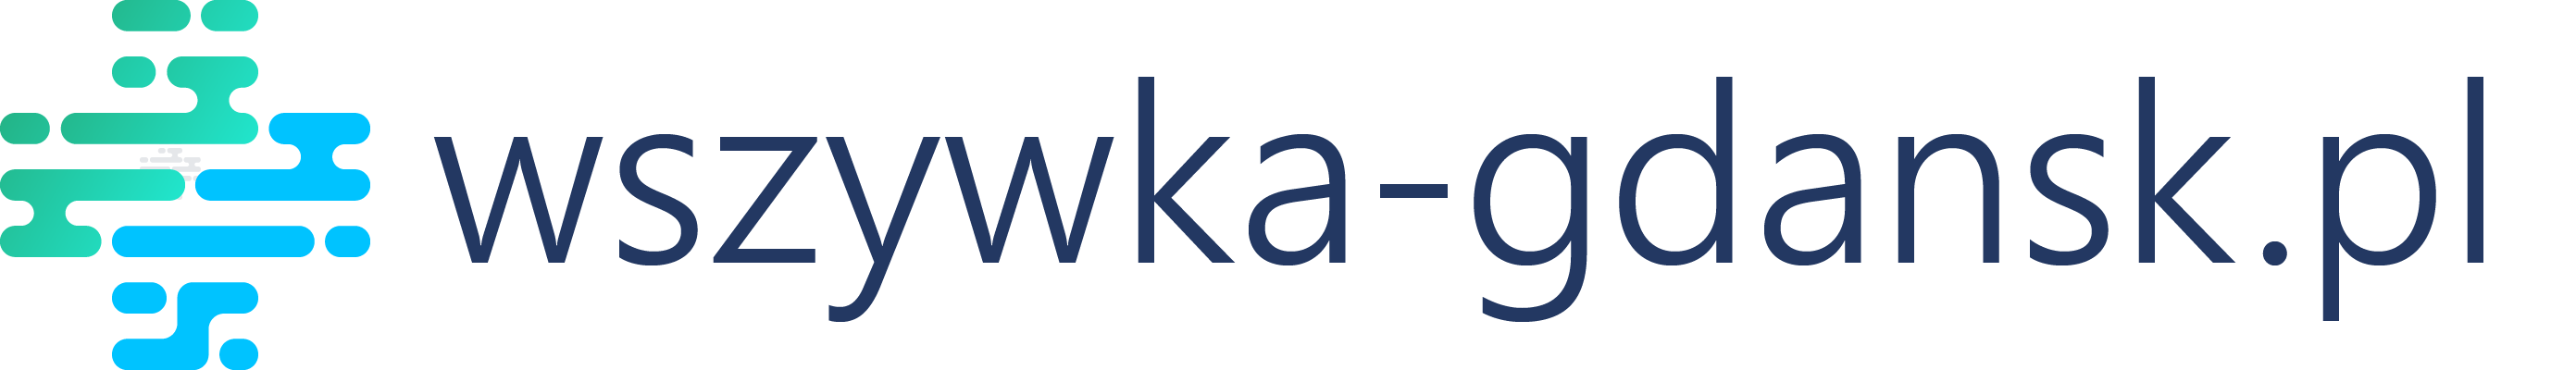 logo esperal wszywka alkoholowa Gdańsk